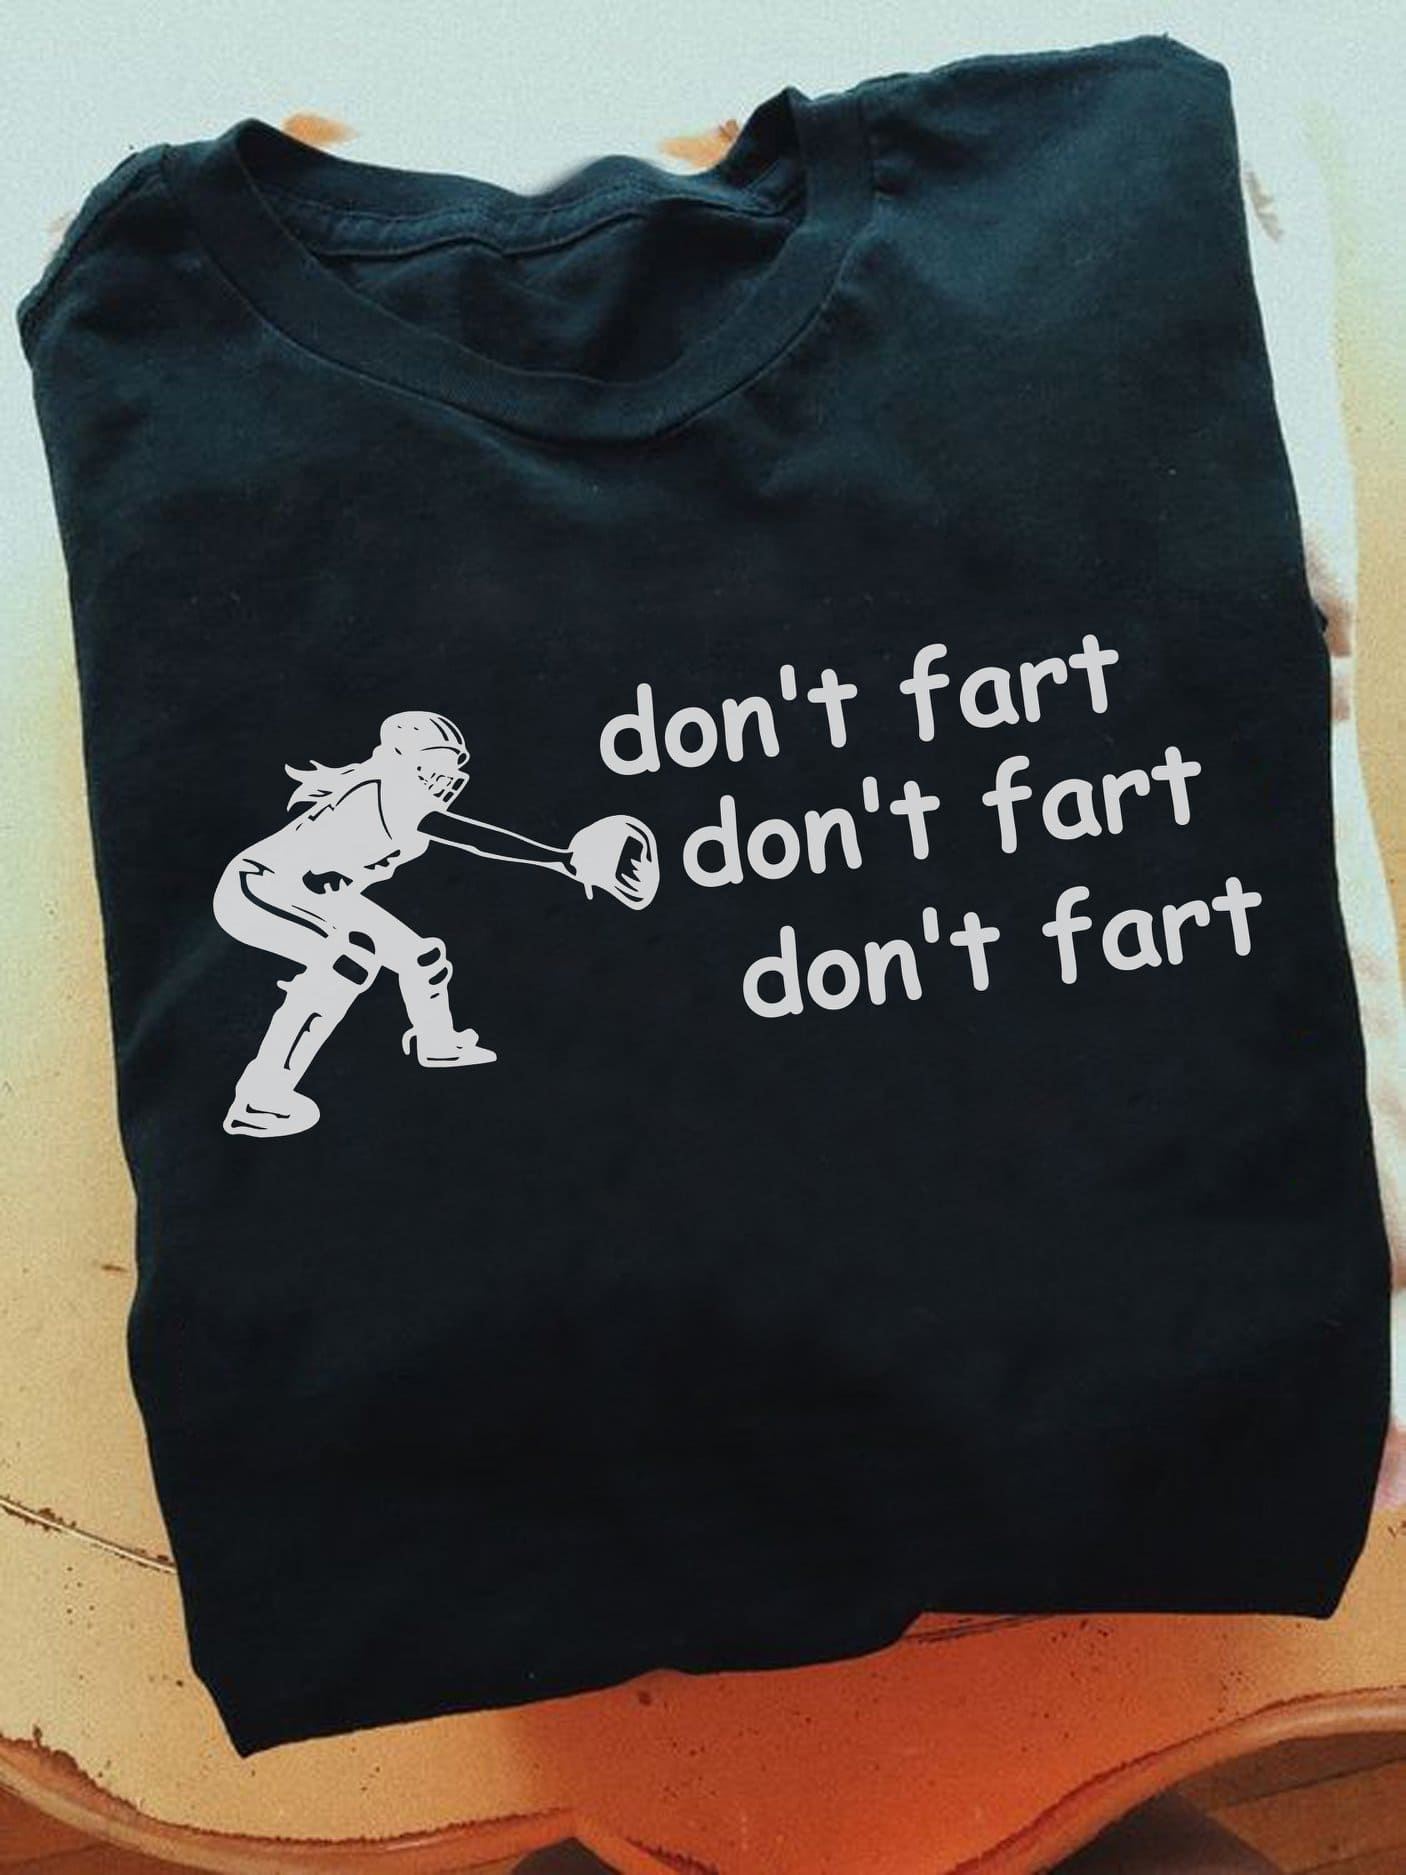 Don't fart - Baseball player T-shirt, baseball catcher, catcher baseball position